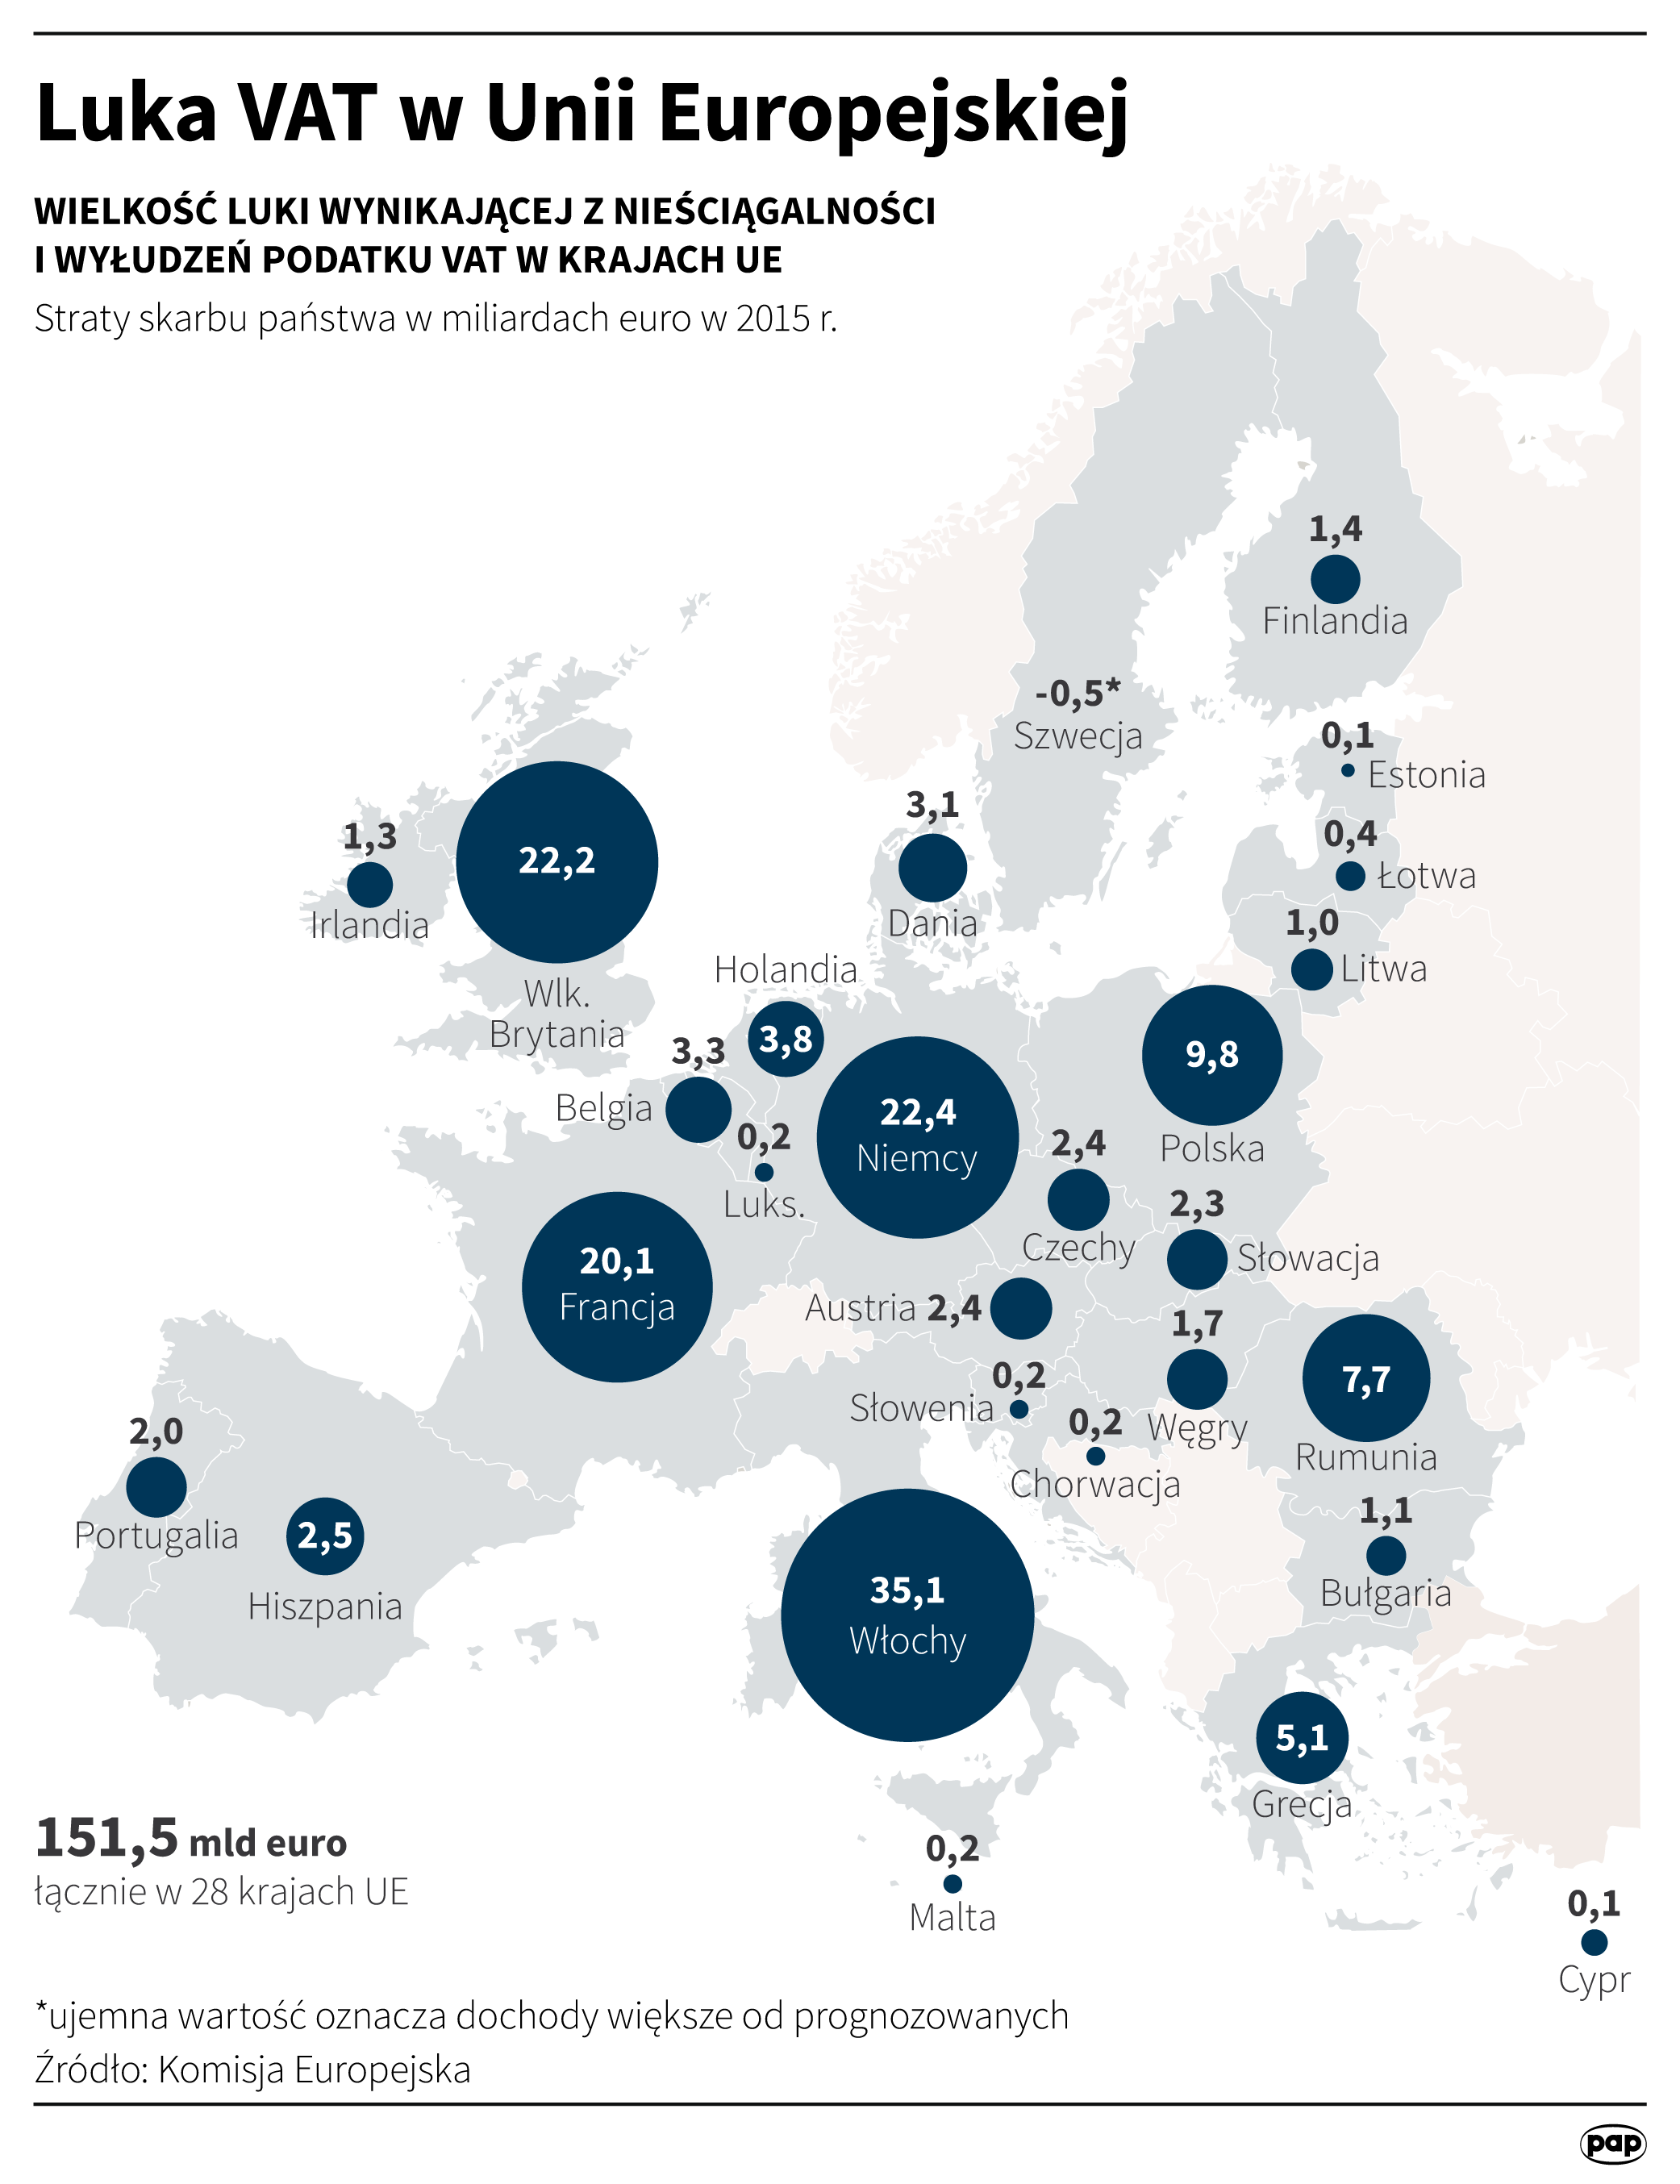 Luka VAT w Unii Europejskiej 2015 r.